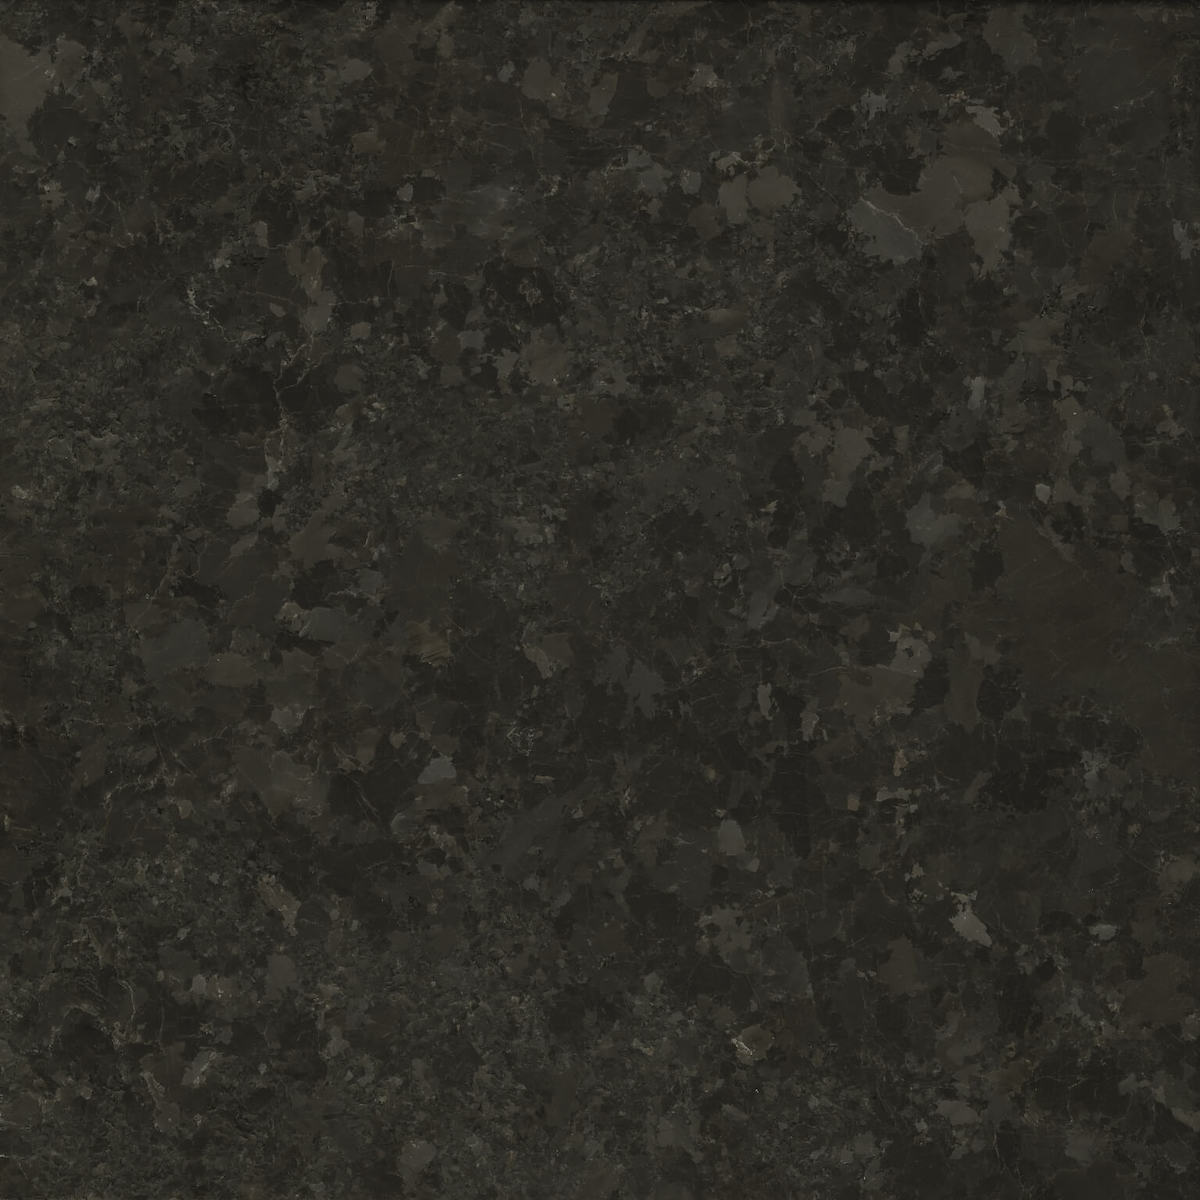 SAINT HENRY BLACK™ granite